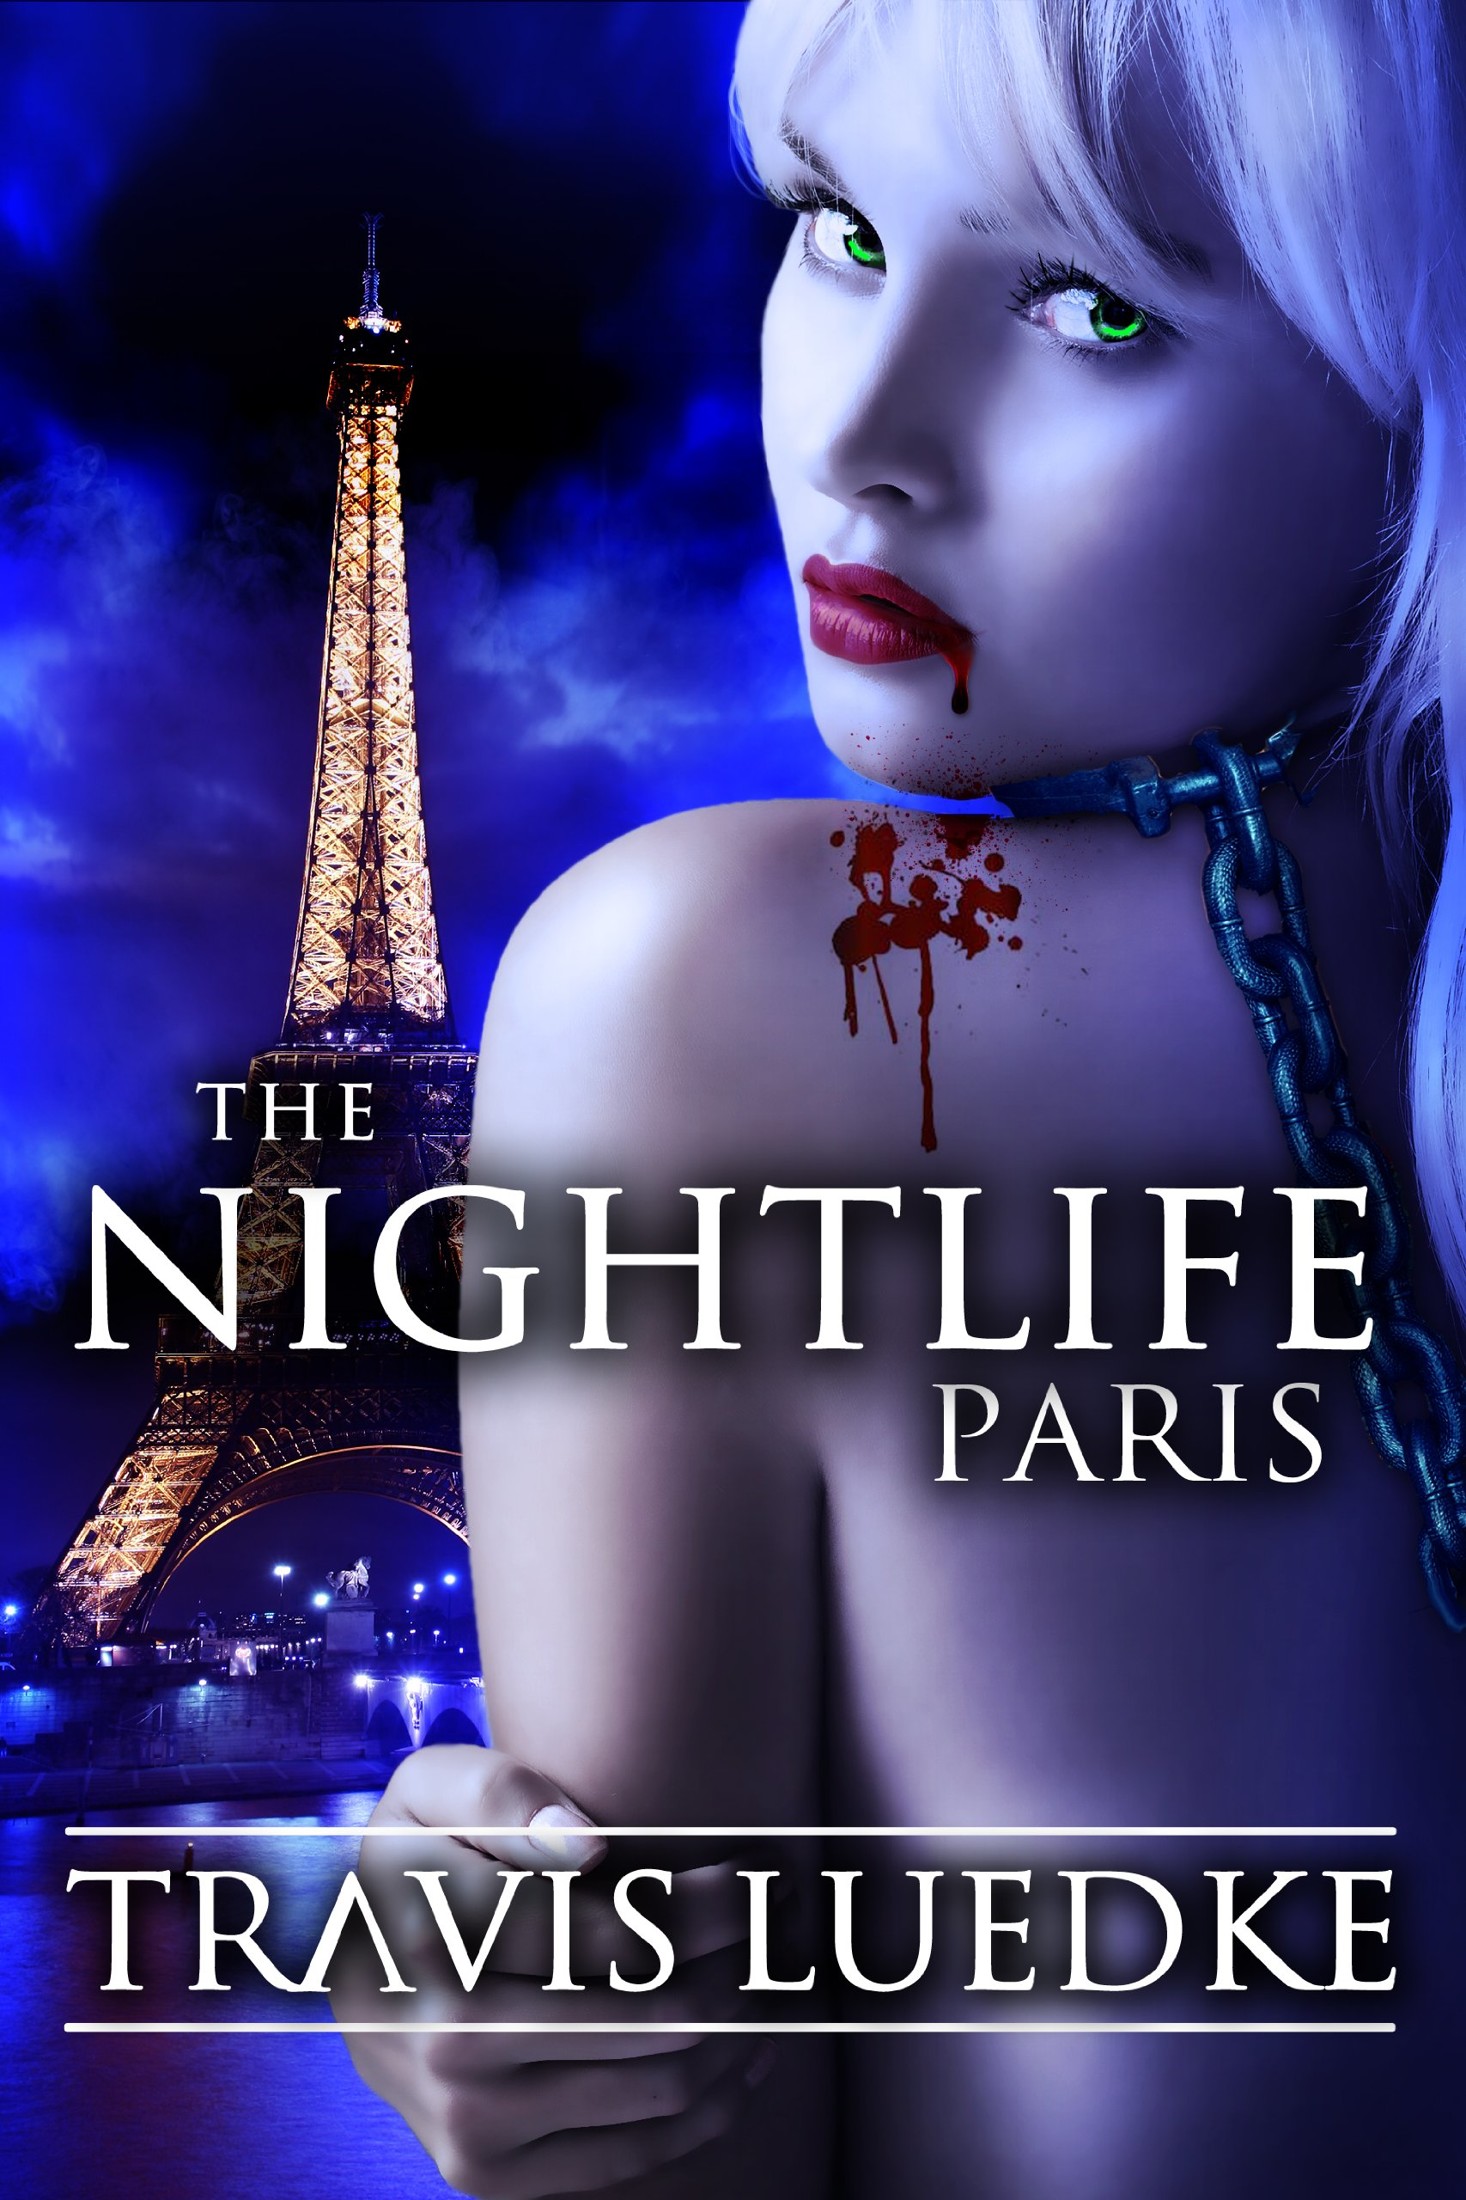 The Nightlife: Paris